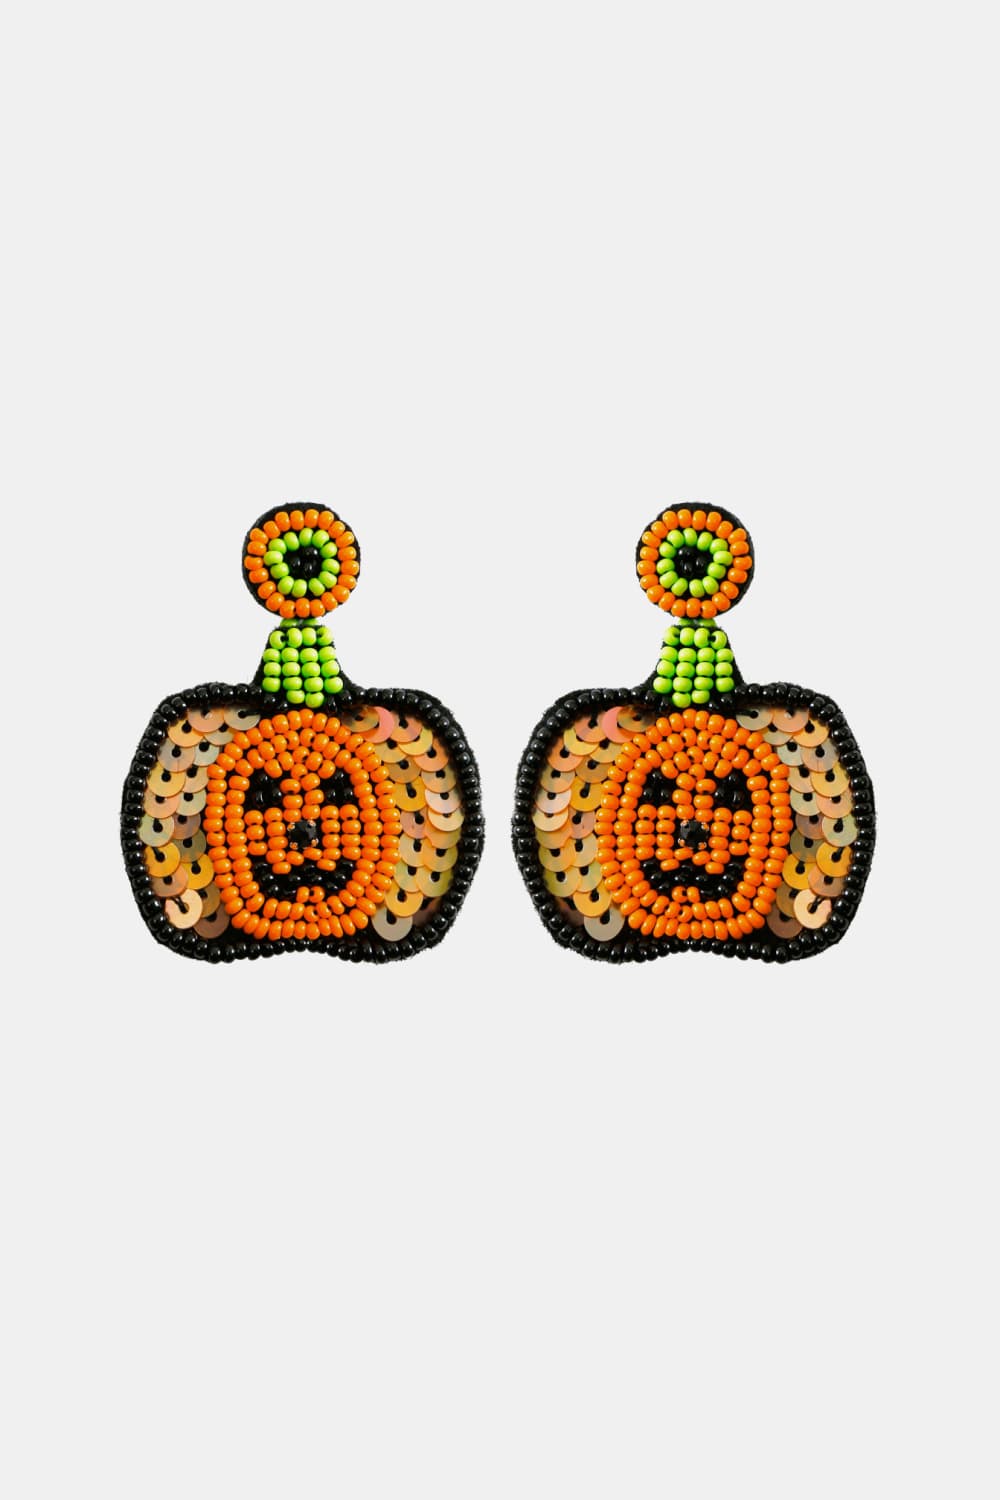 Pumpkin Shape Beaded Dangle Earrings - Orange / One Size - Women’s Jewelry - Earrings - 2 - 2024